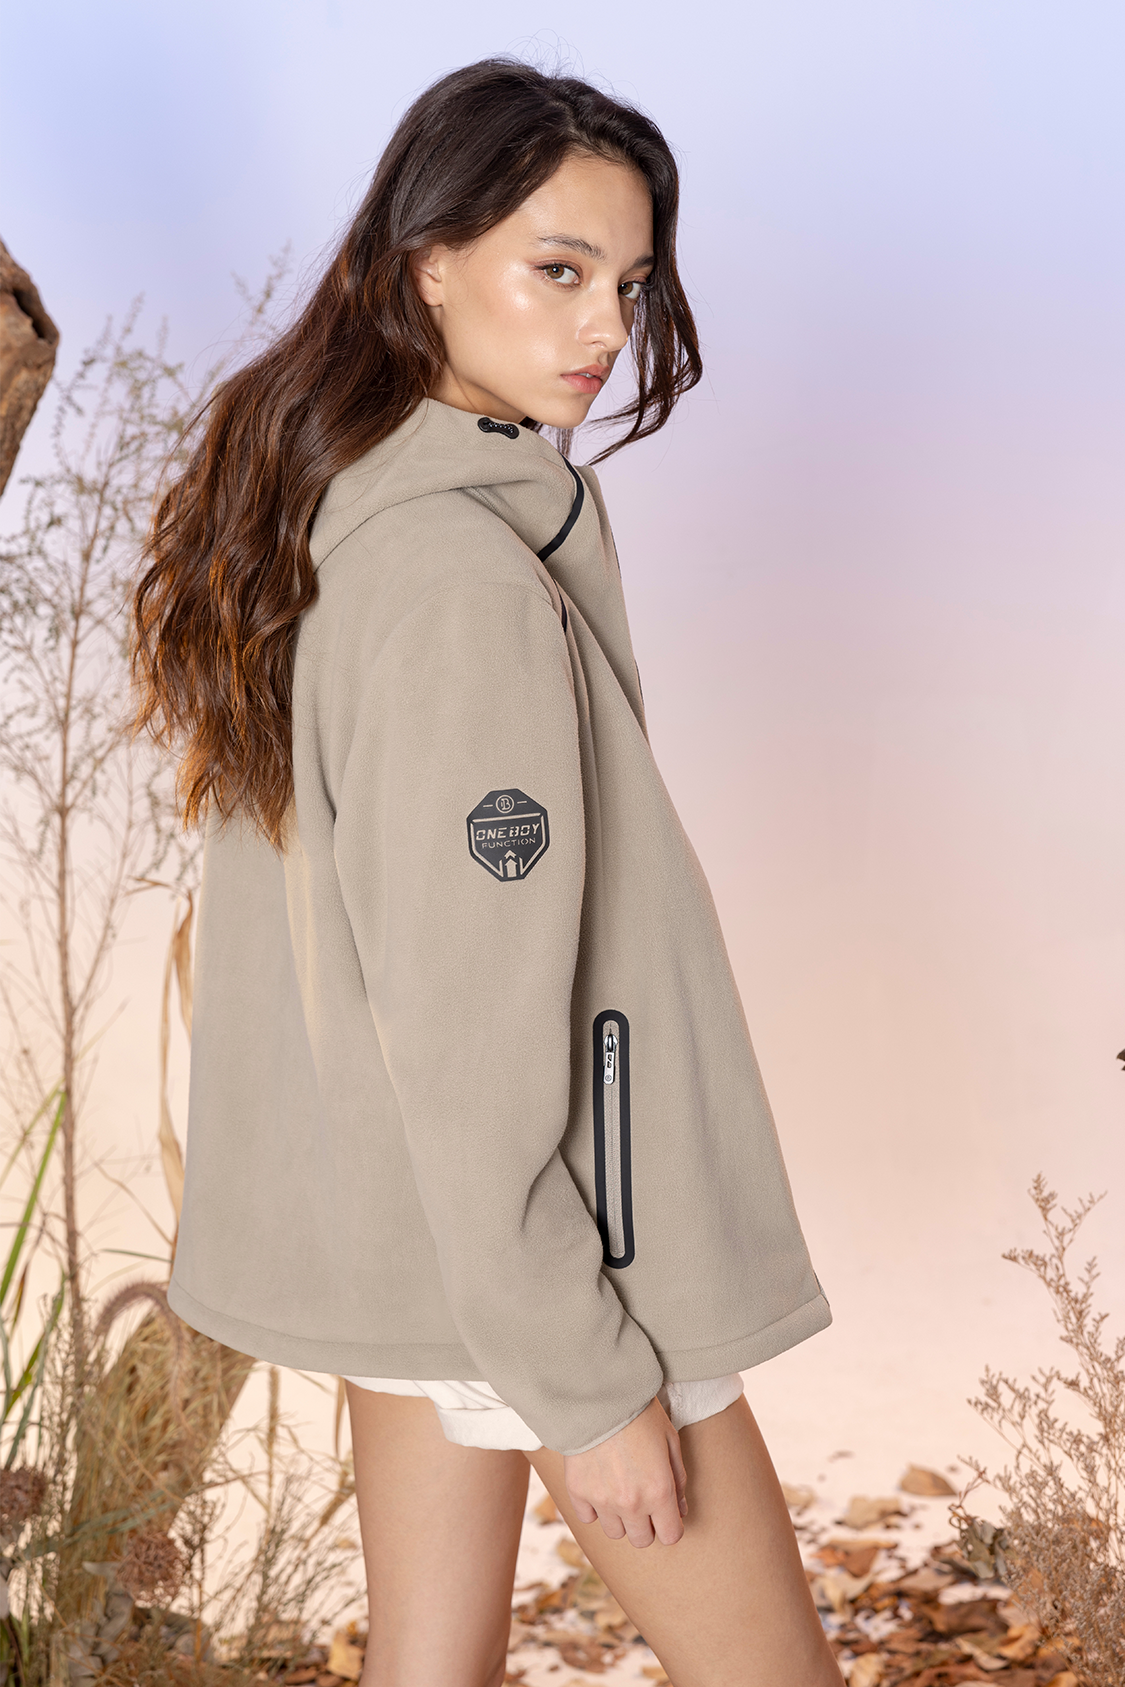 Lightfleece Warmguard Windresist Interchange Jacket For Female